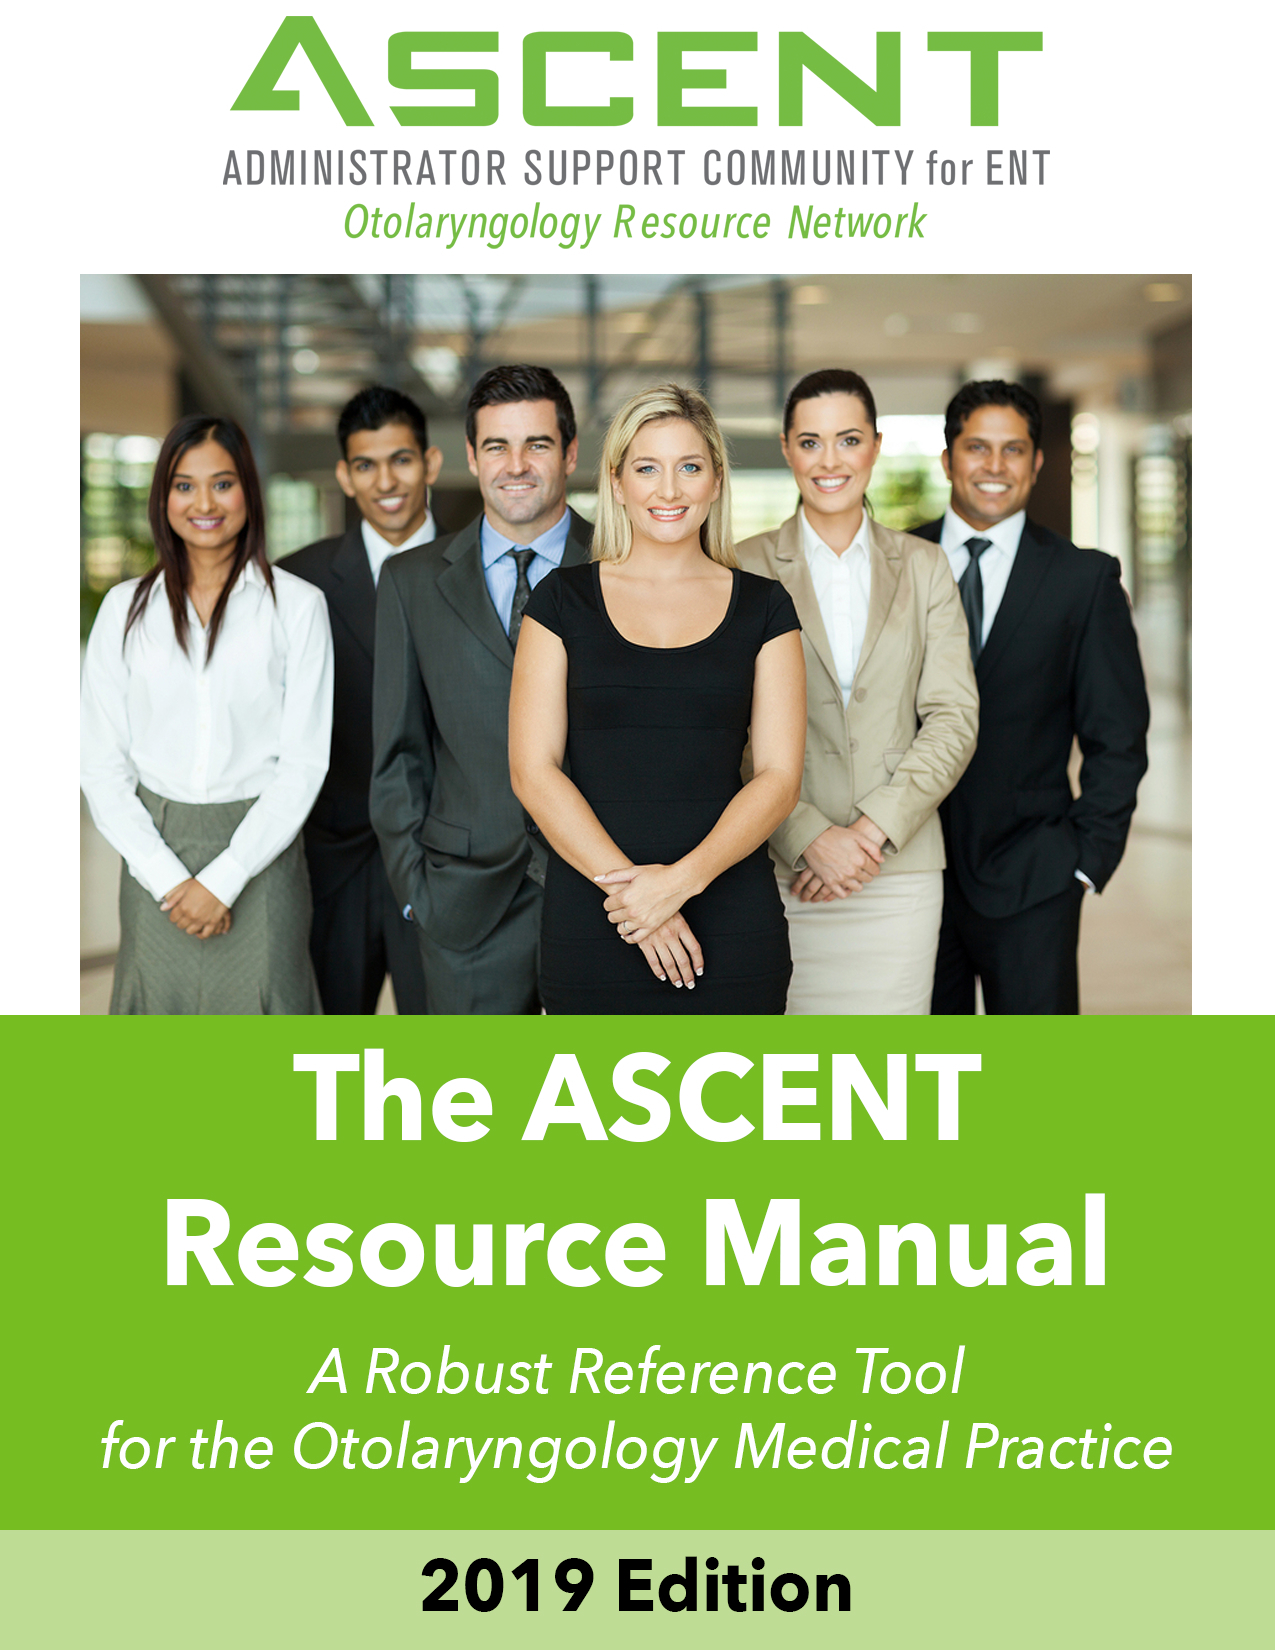 2019 ASCENT Resource Manual - Digital Copy